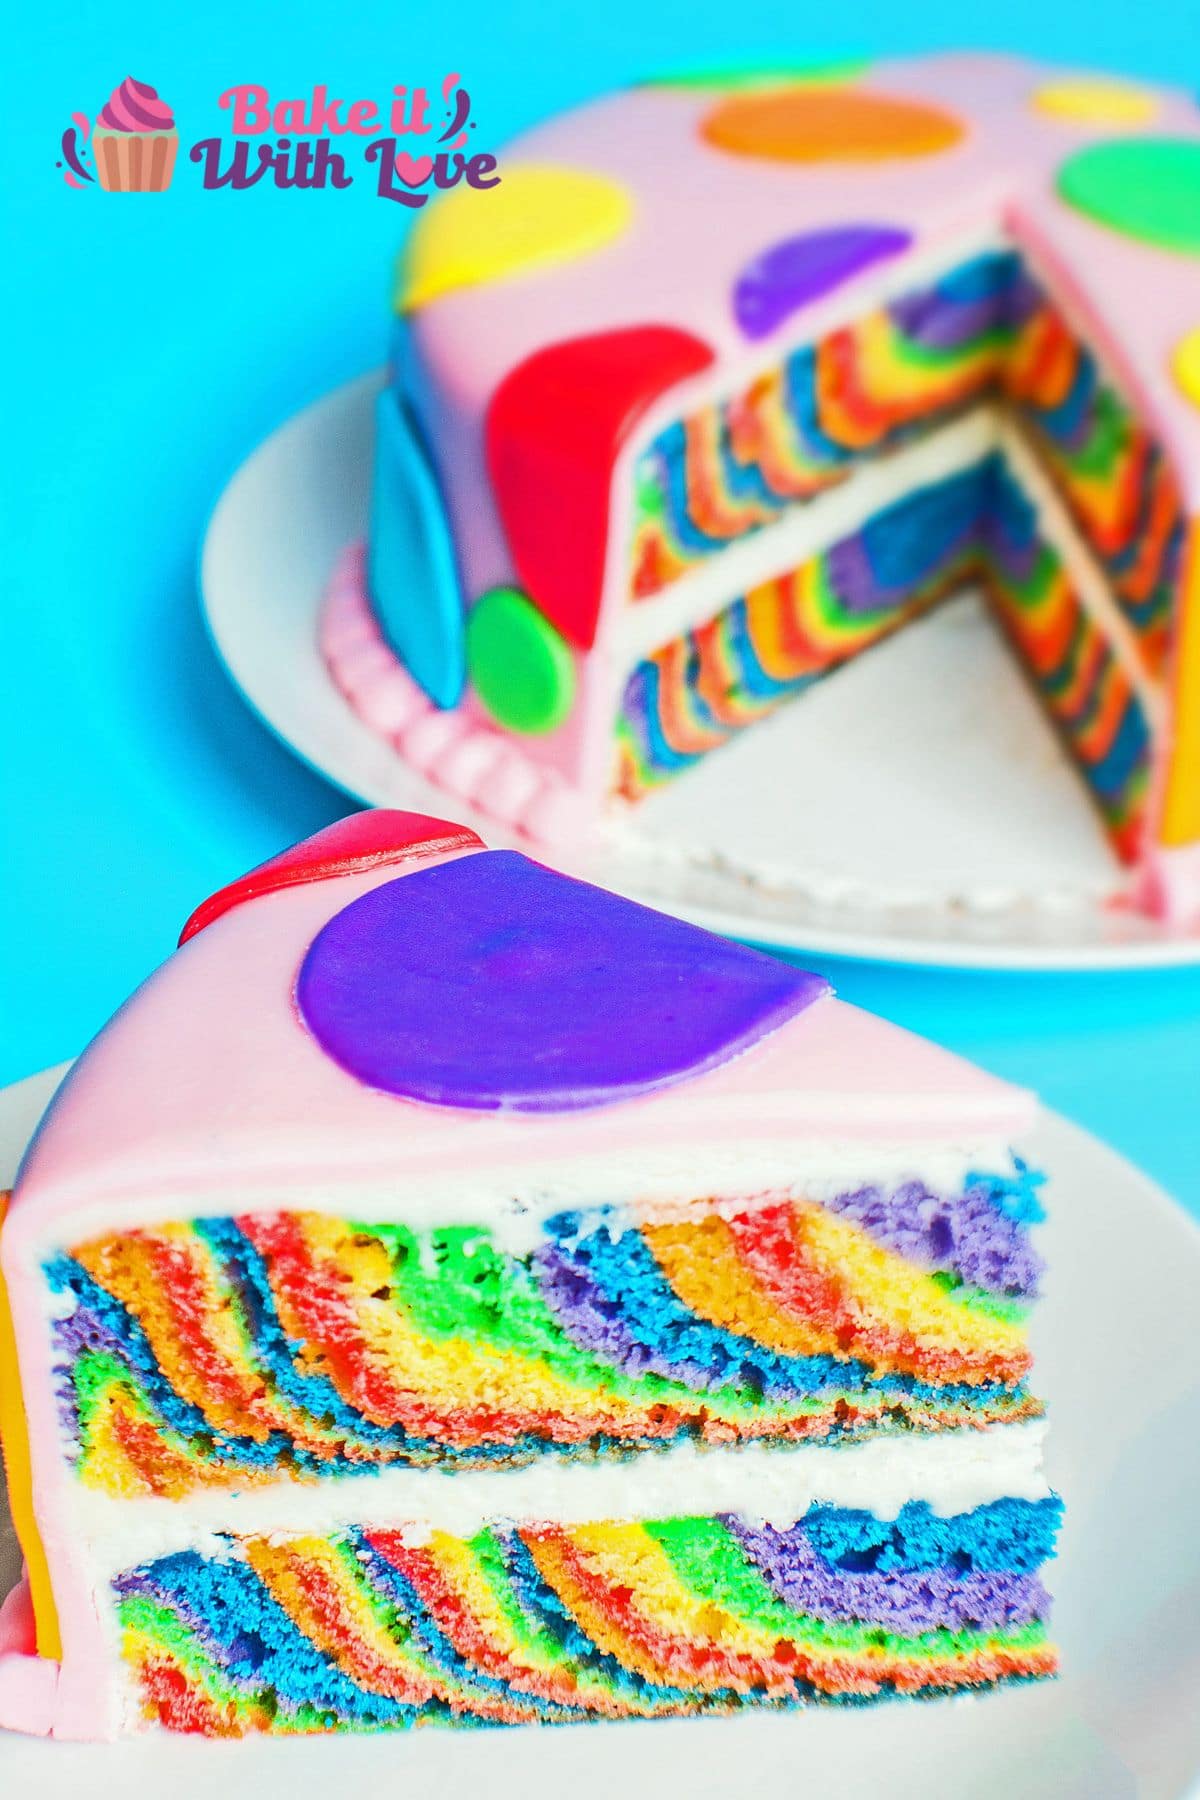 बटरक्रीम फिलिंग और फोंडेंट लेयर के साथ कटा हुआ वन पैन रेनबो लेयर केक की लंबवत छवि।